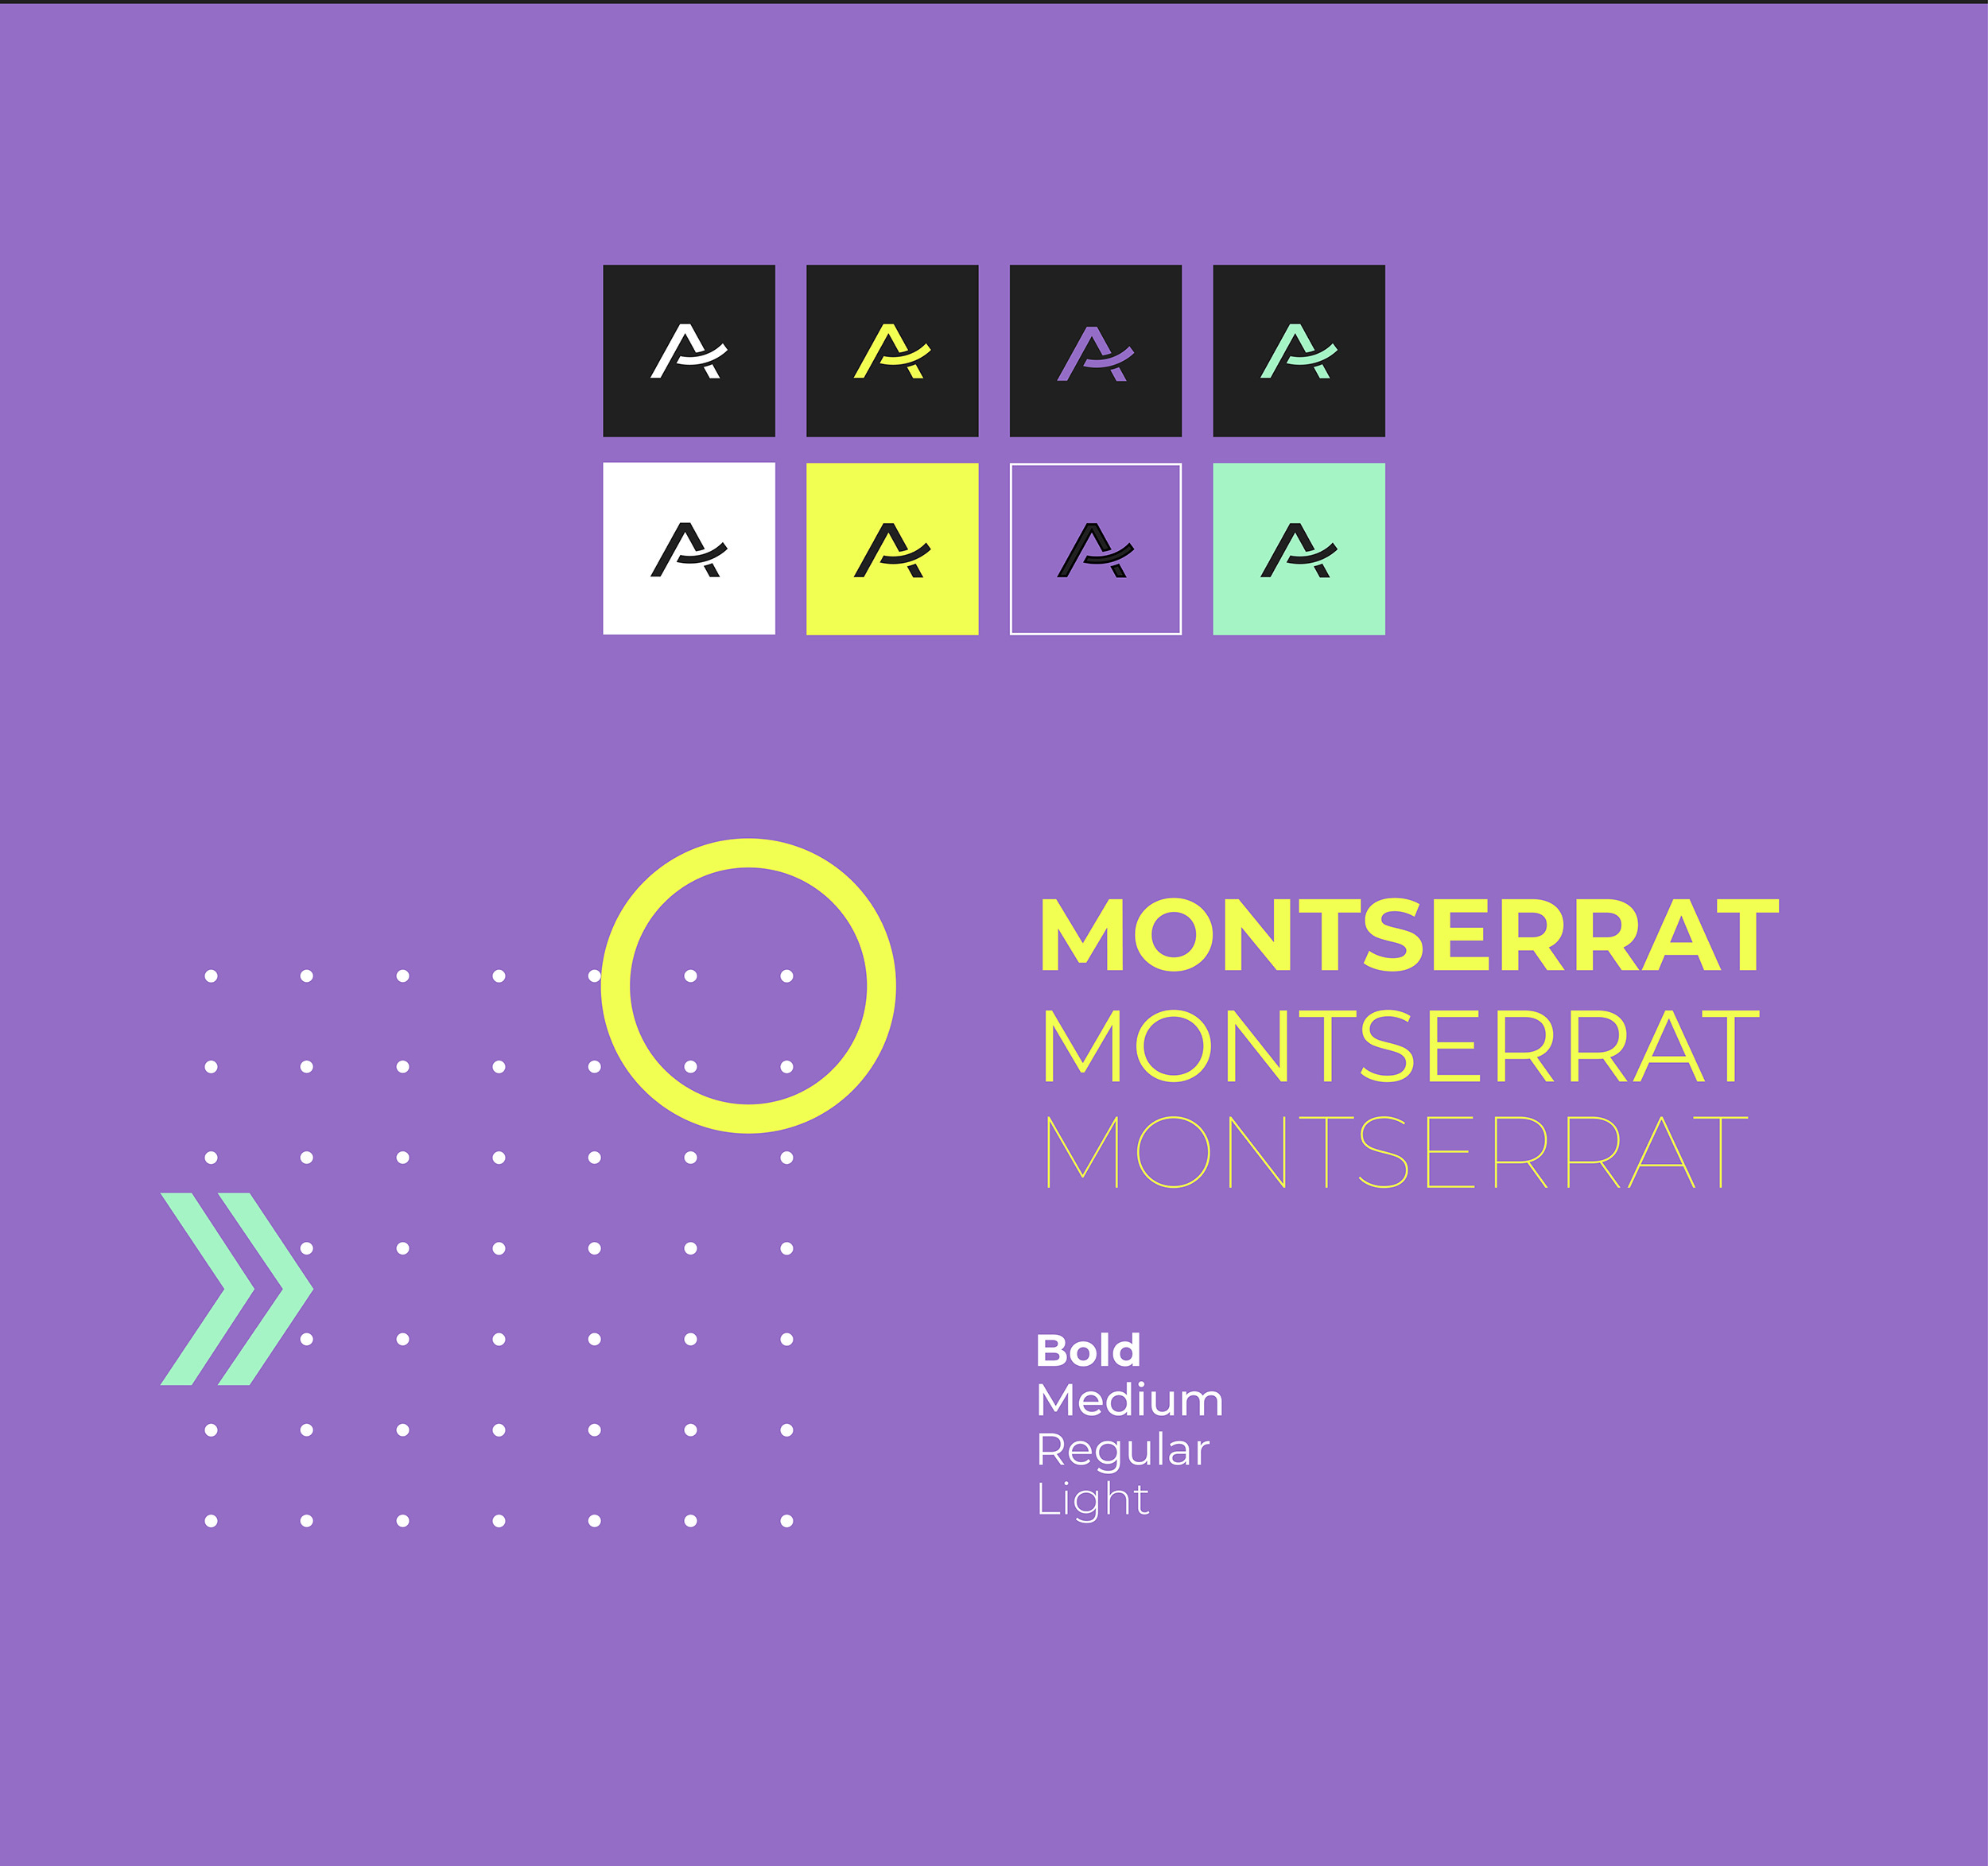 Montserrat als Typografie sowie verschiedene Neonfarben in Kombination mit dem Signet